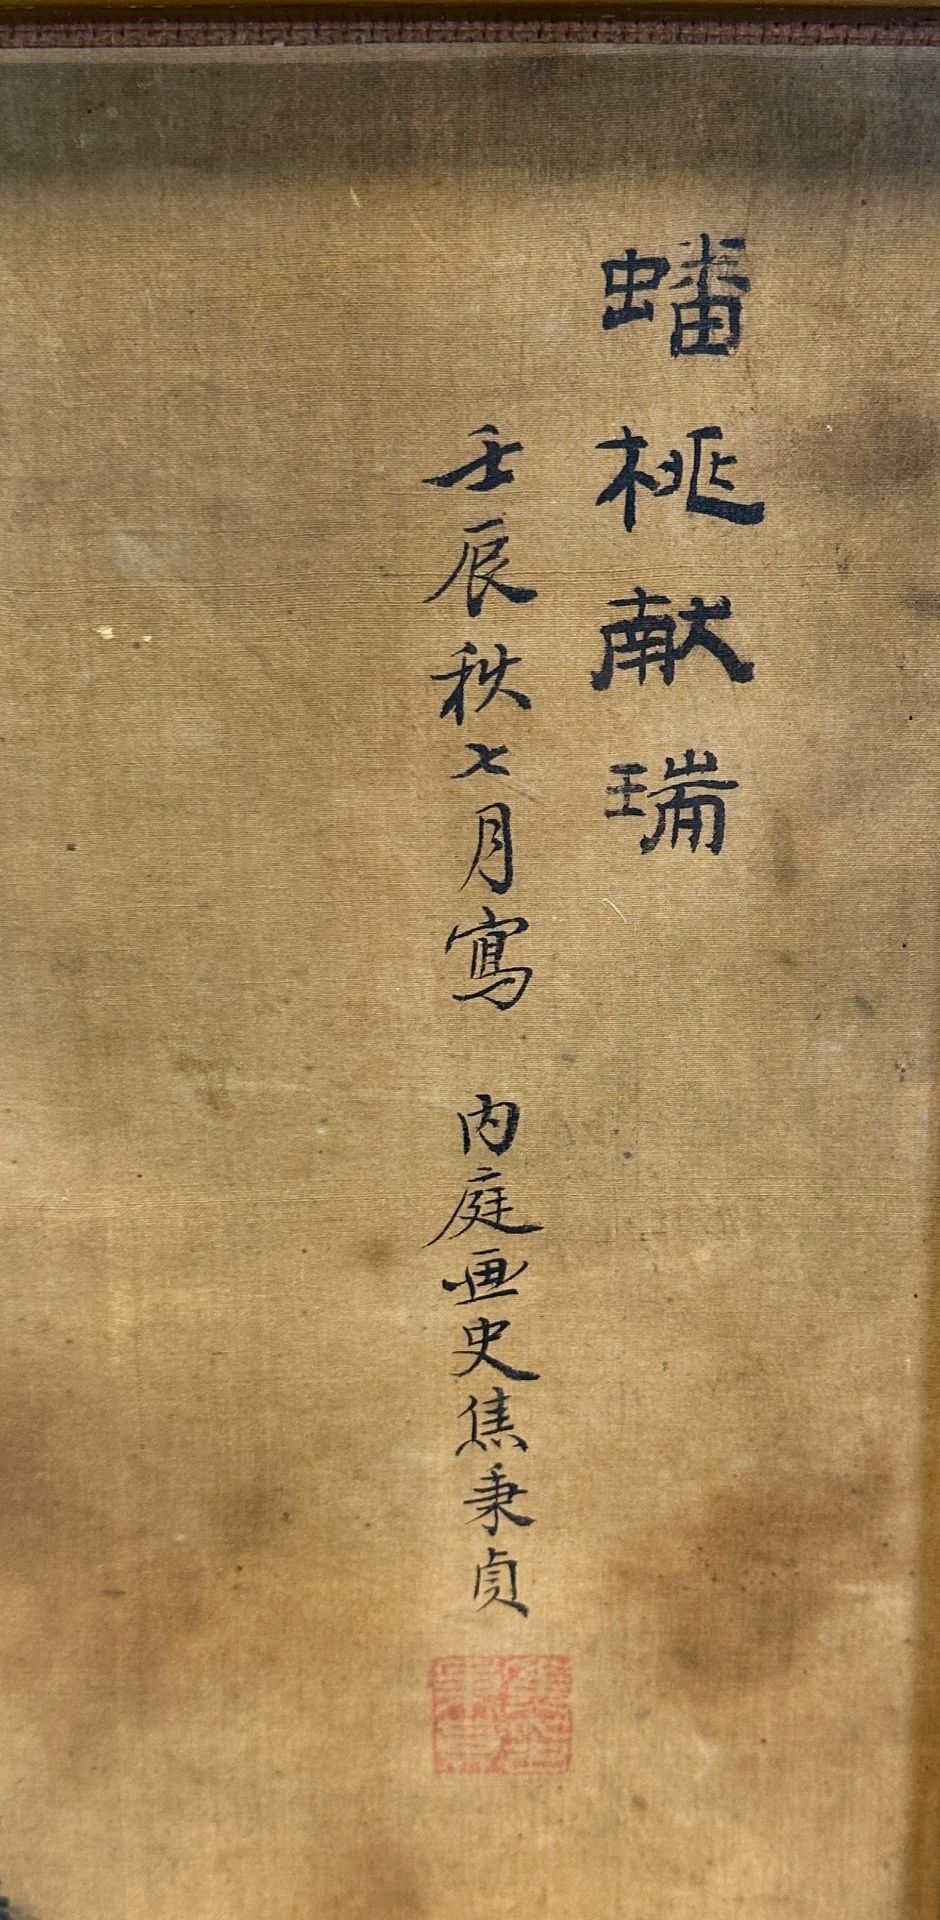 JIAO Bingzhen (1606 - 1687) zugeschrieben. Pfirsich und Glücksverheißung. - Bild 3 aus 6